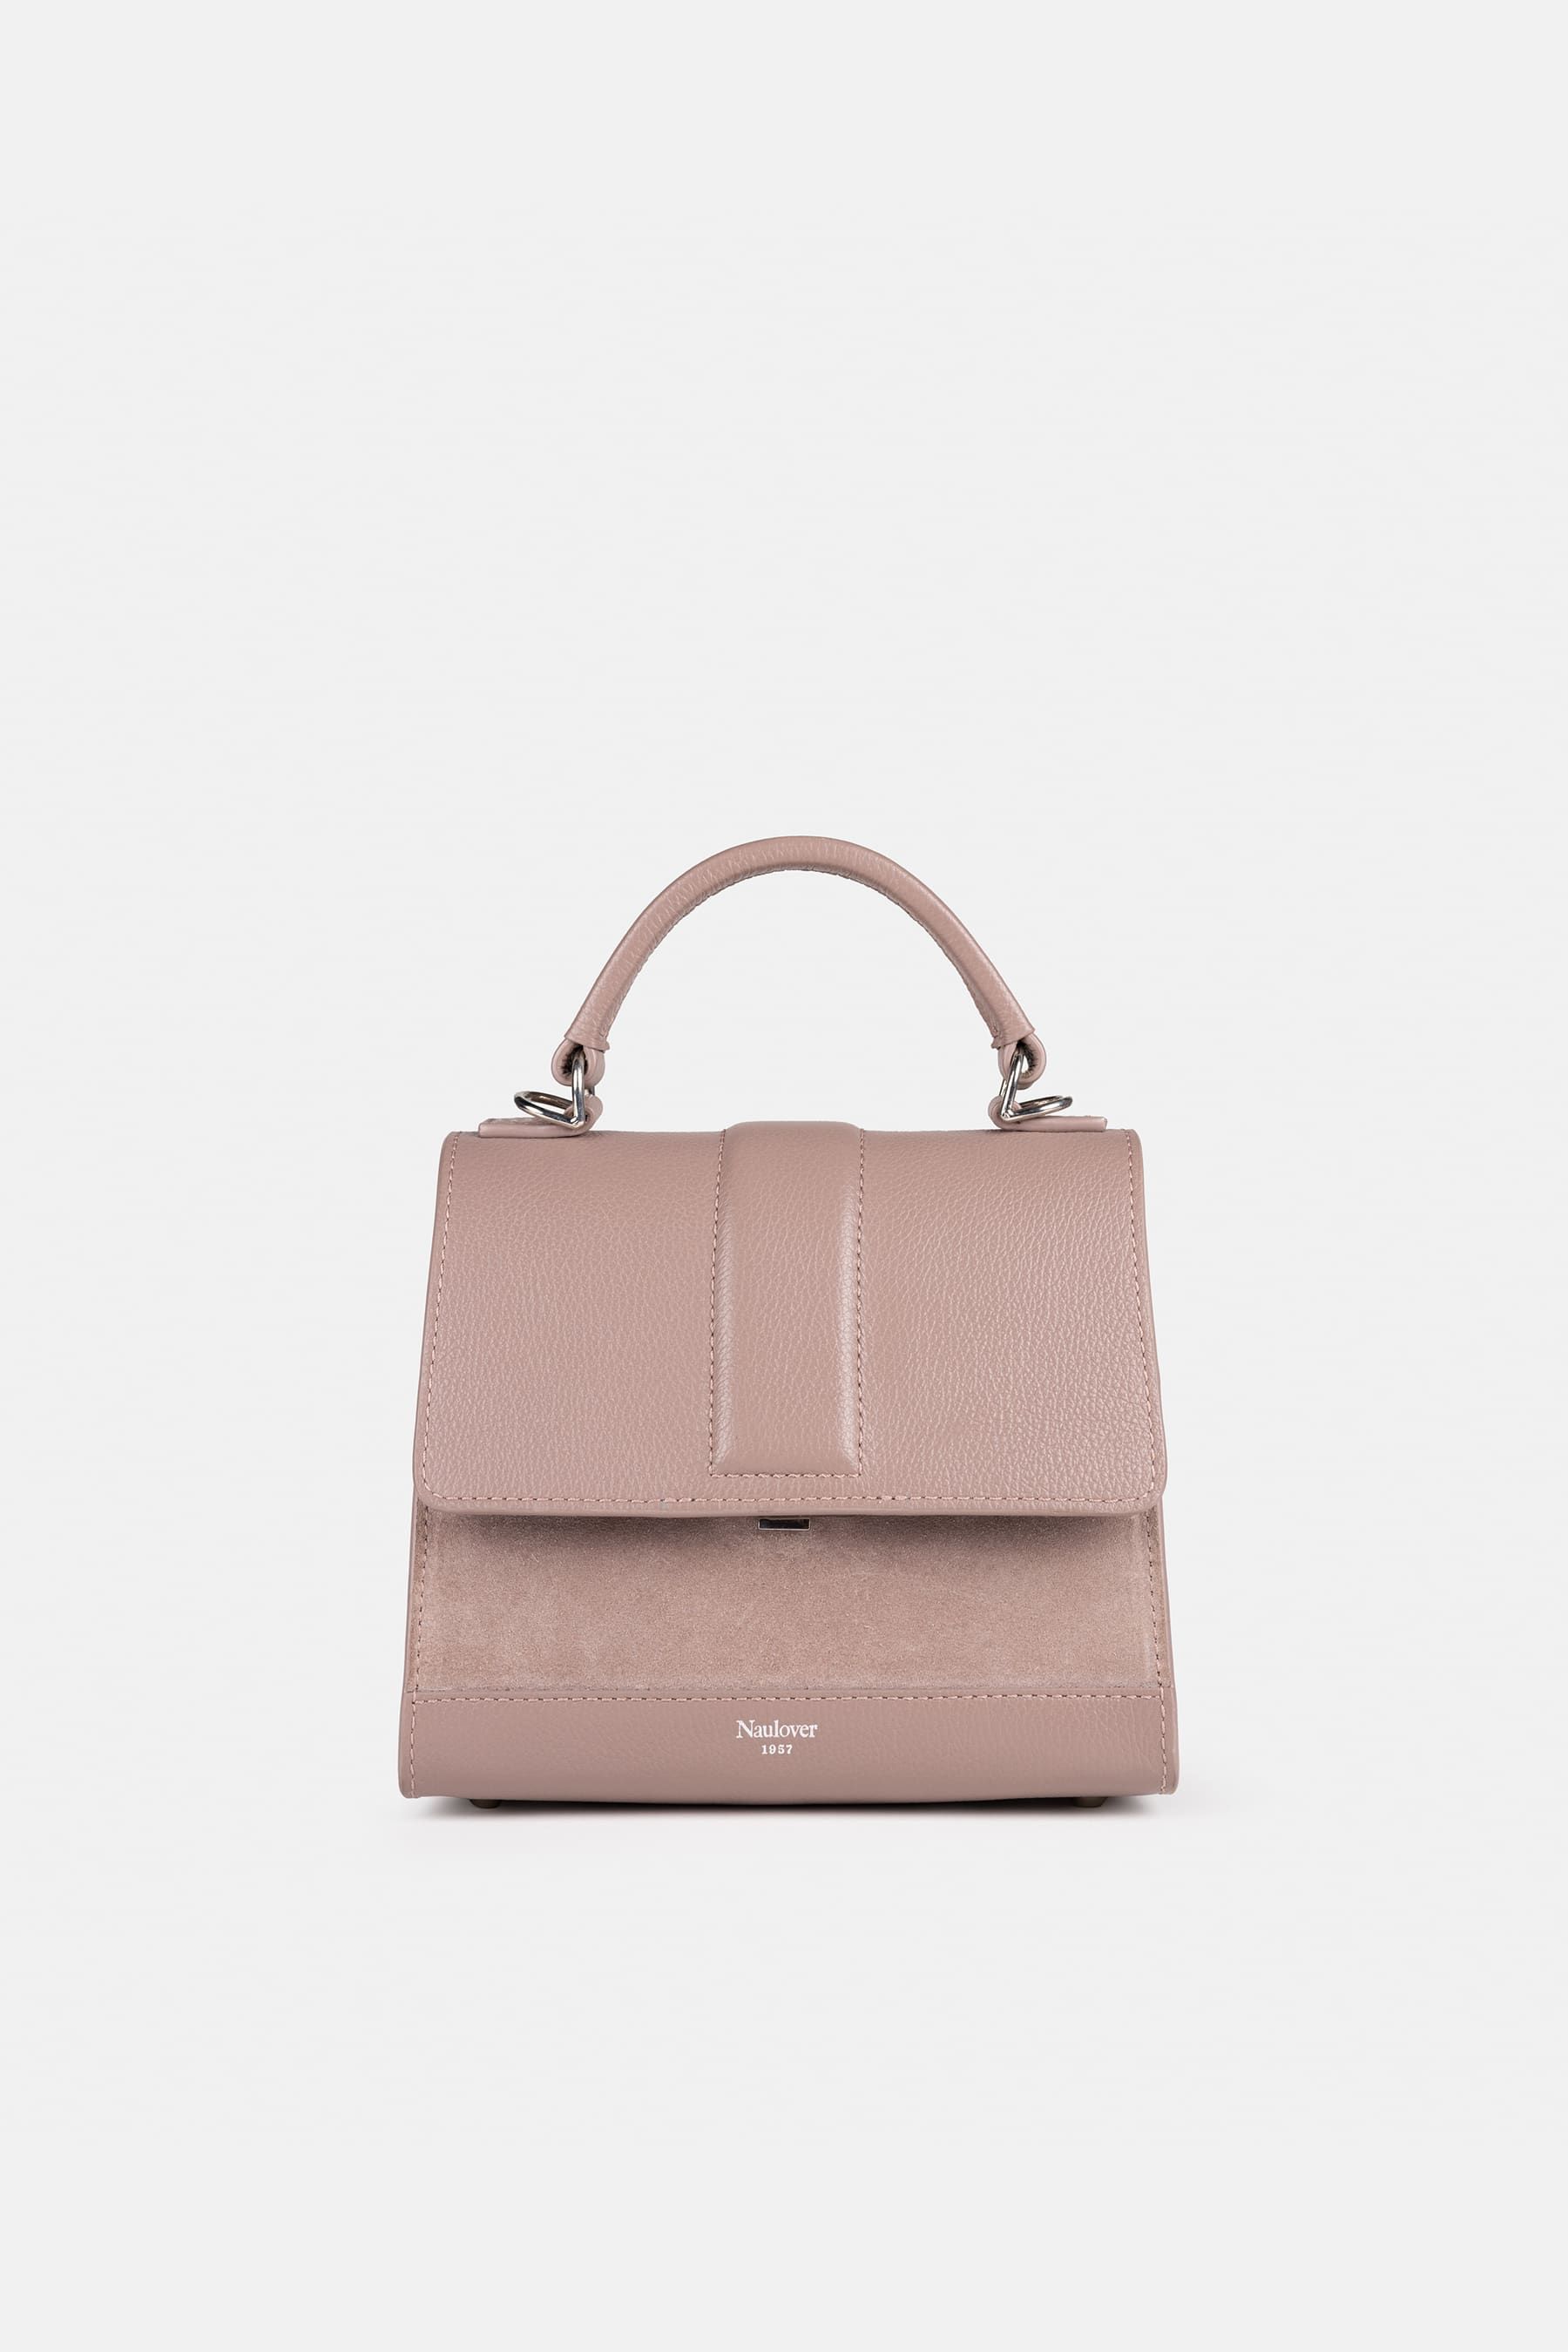 Bolso pequeño con asa estilo ‘Dauphine’ color rosado